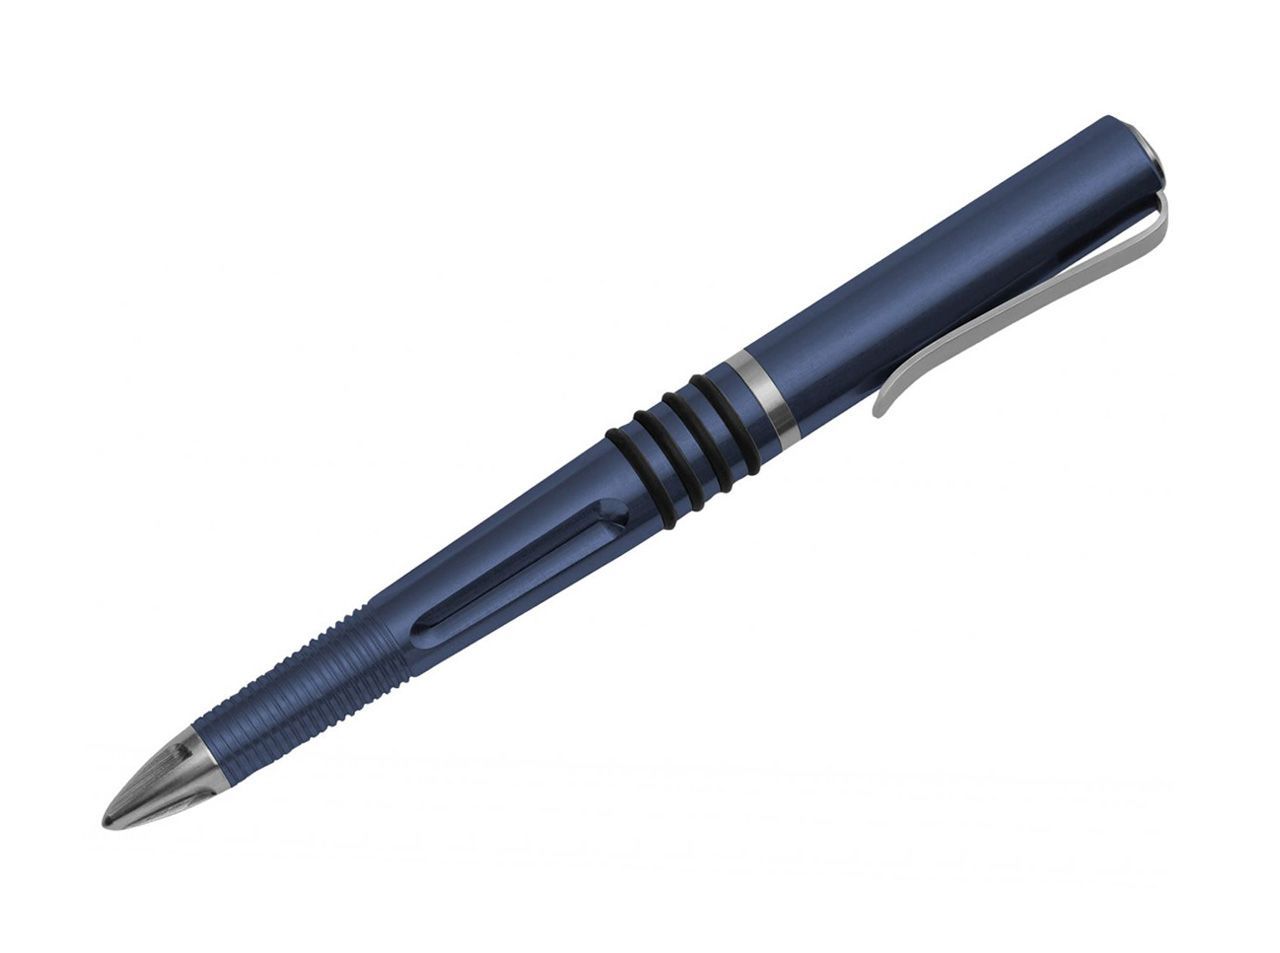 FKMD Tactical Pen Blue